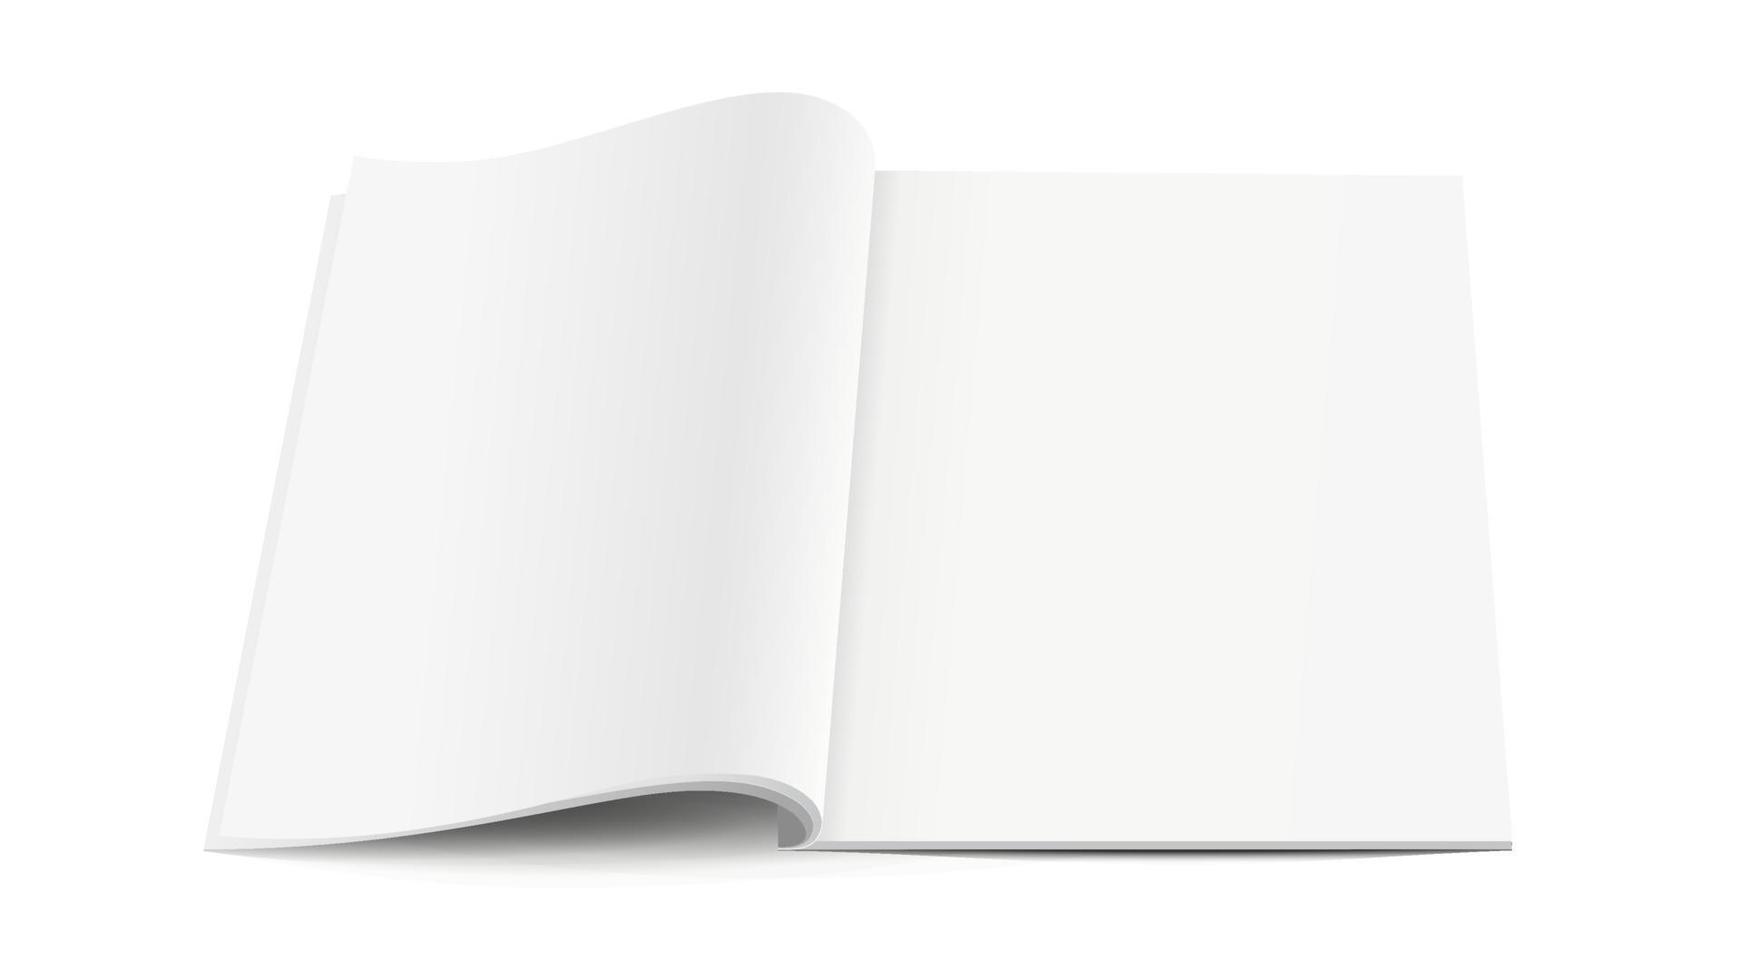 wit leeg geopend tijdschrift met zachte schaduwen op witte achtergrond, mock up vector